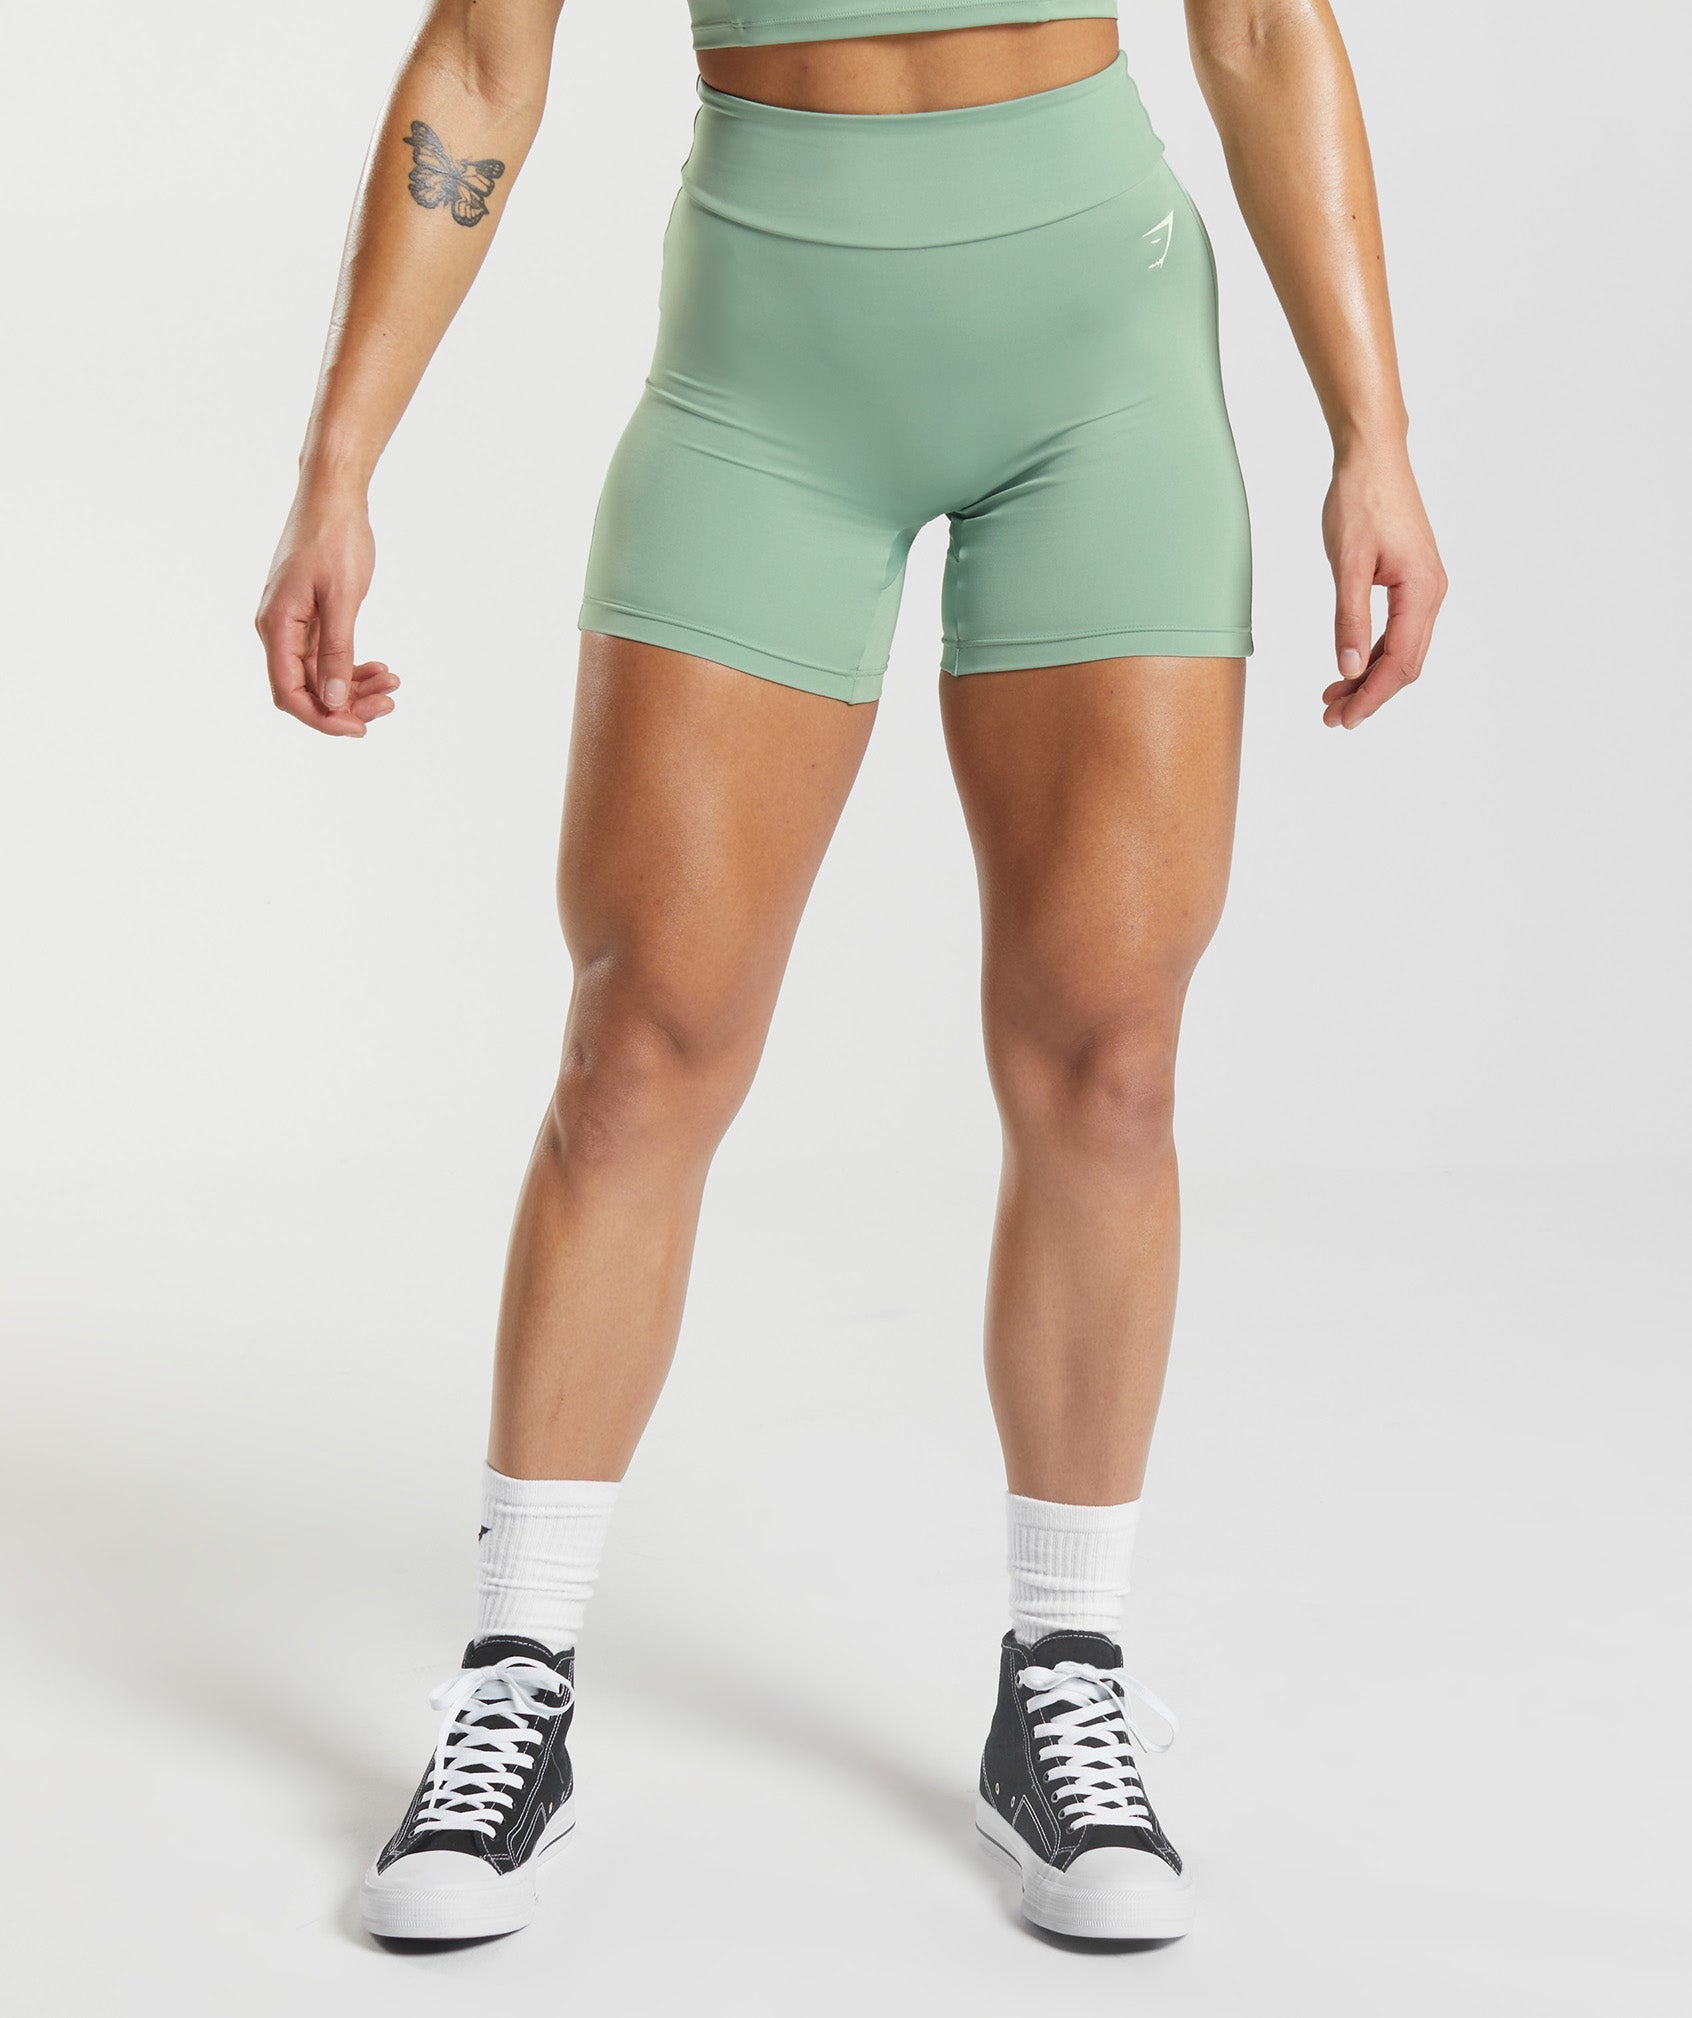 Gymshark GS Power Original Tight Shorts - Desert Sage Green